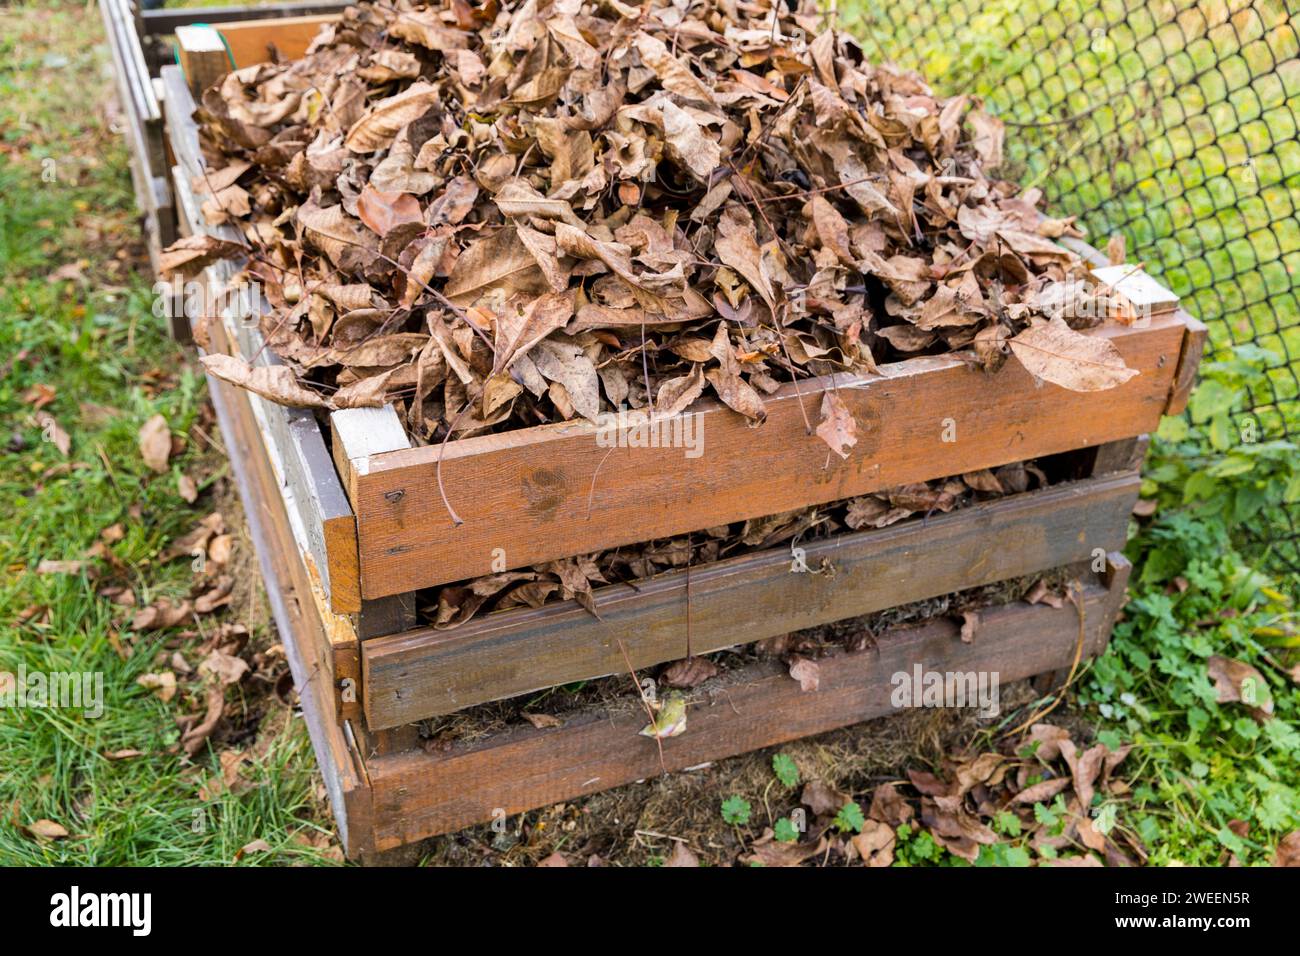 Un compostador hecho de tablas de madera llenas de hojas secas. Foto de stock